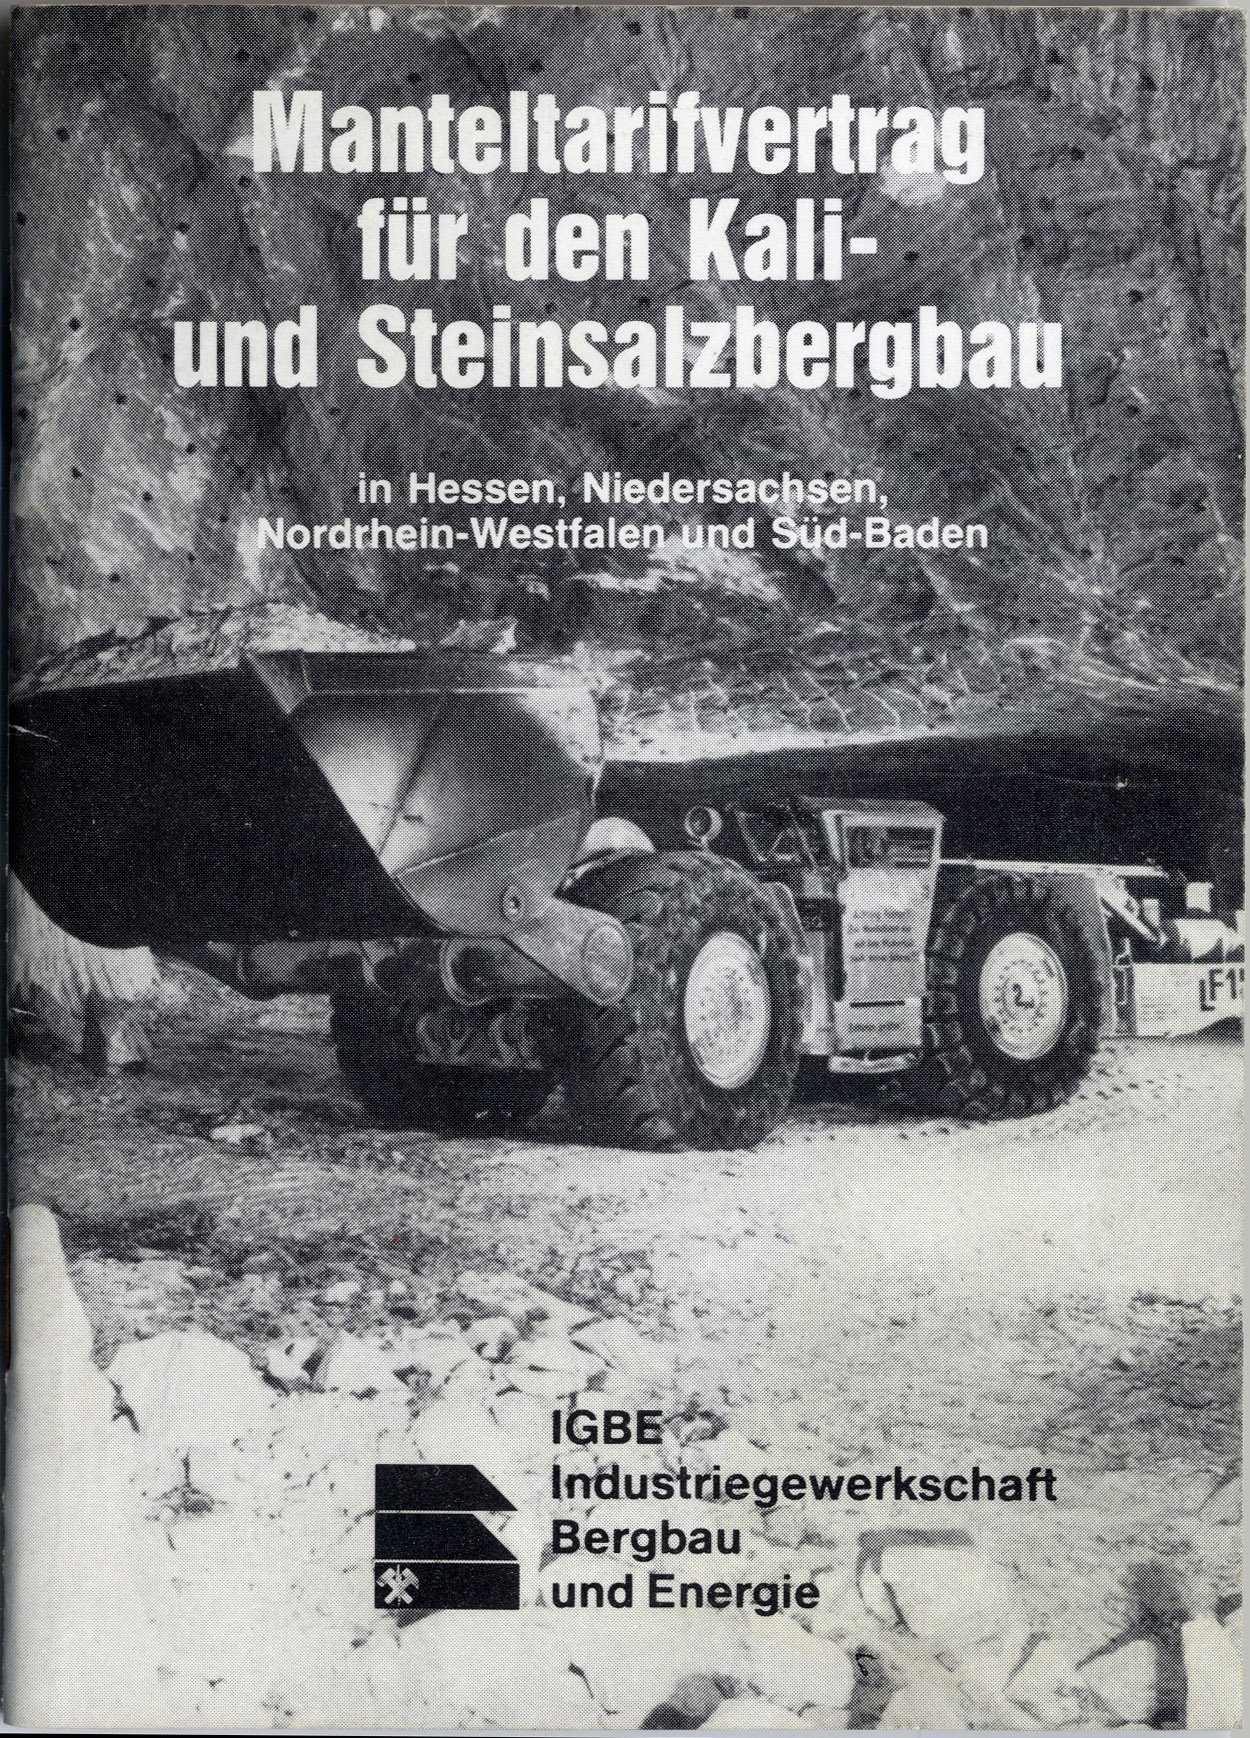 Manteltarifvertrag für den Kali- und Steinsalzbergbau in Hessen, Niedersachsen, Nordrhein-Westfalen und Süd-Baden (Werra-Kalibergbau-Museum, Heringen/W. CC BY-NC-SA)